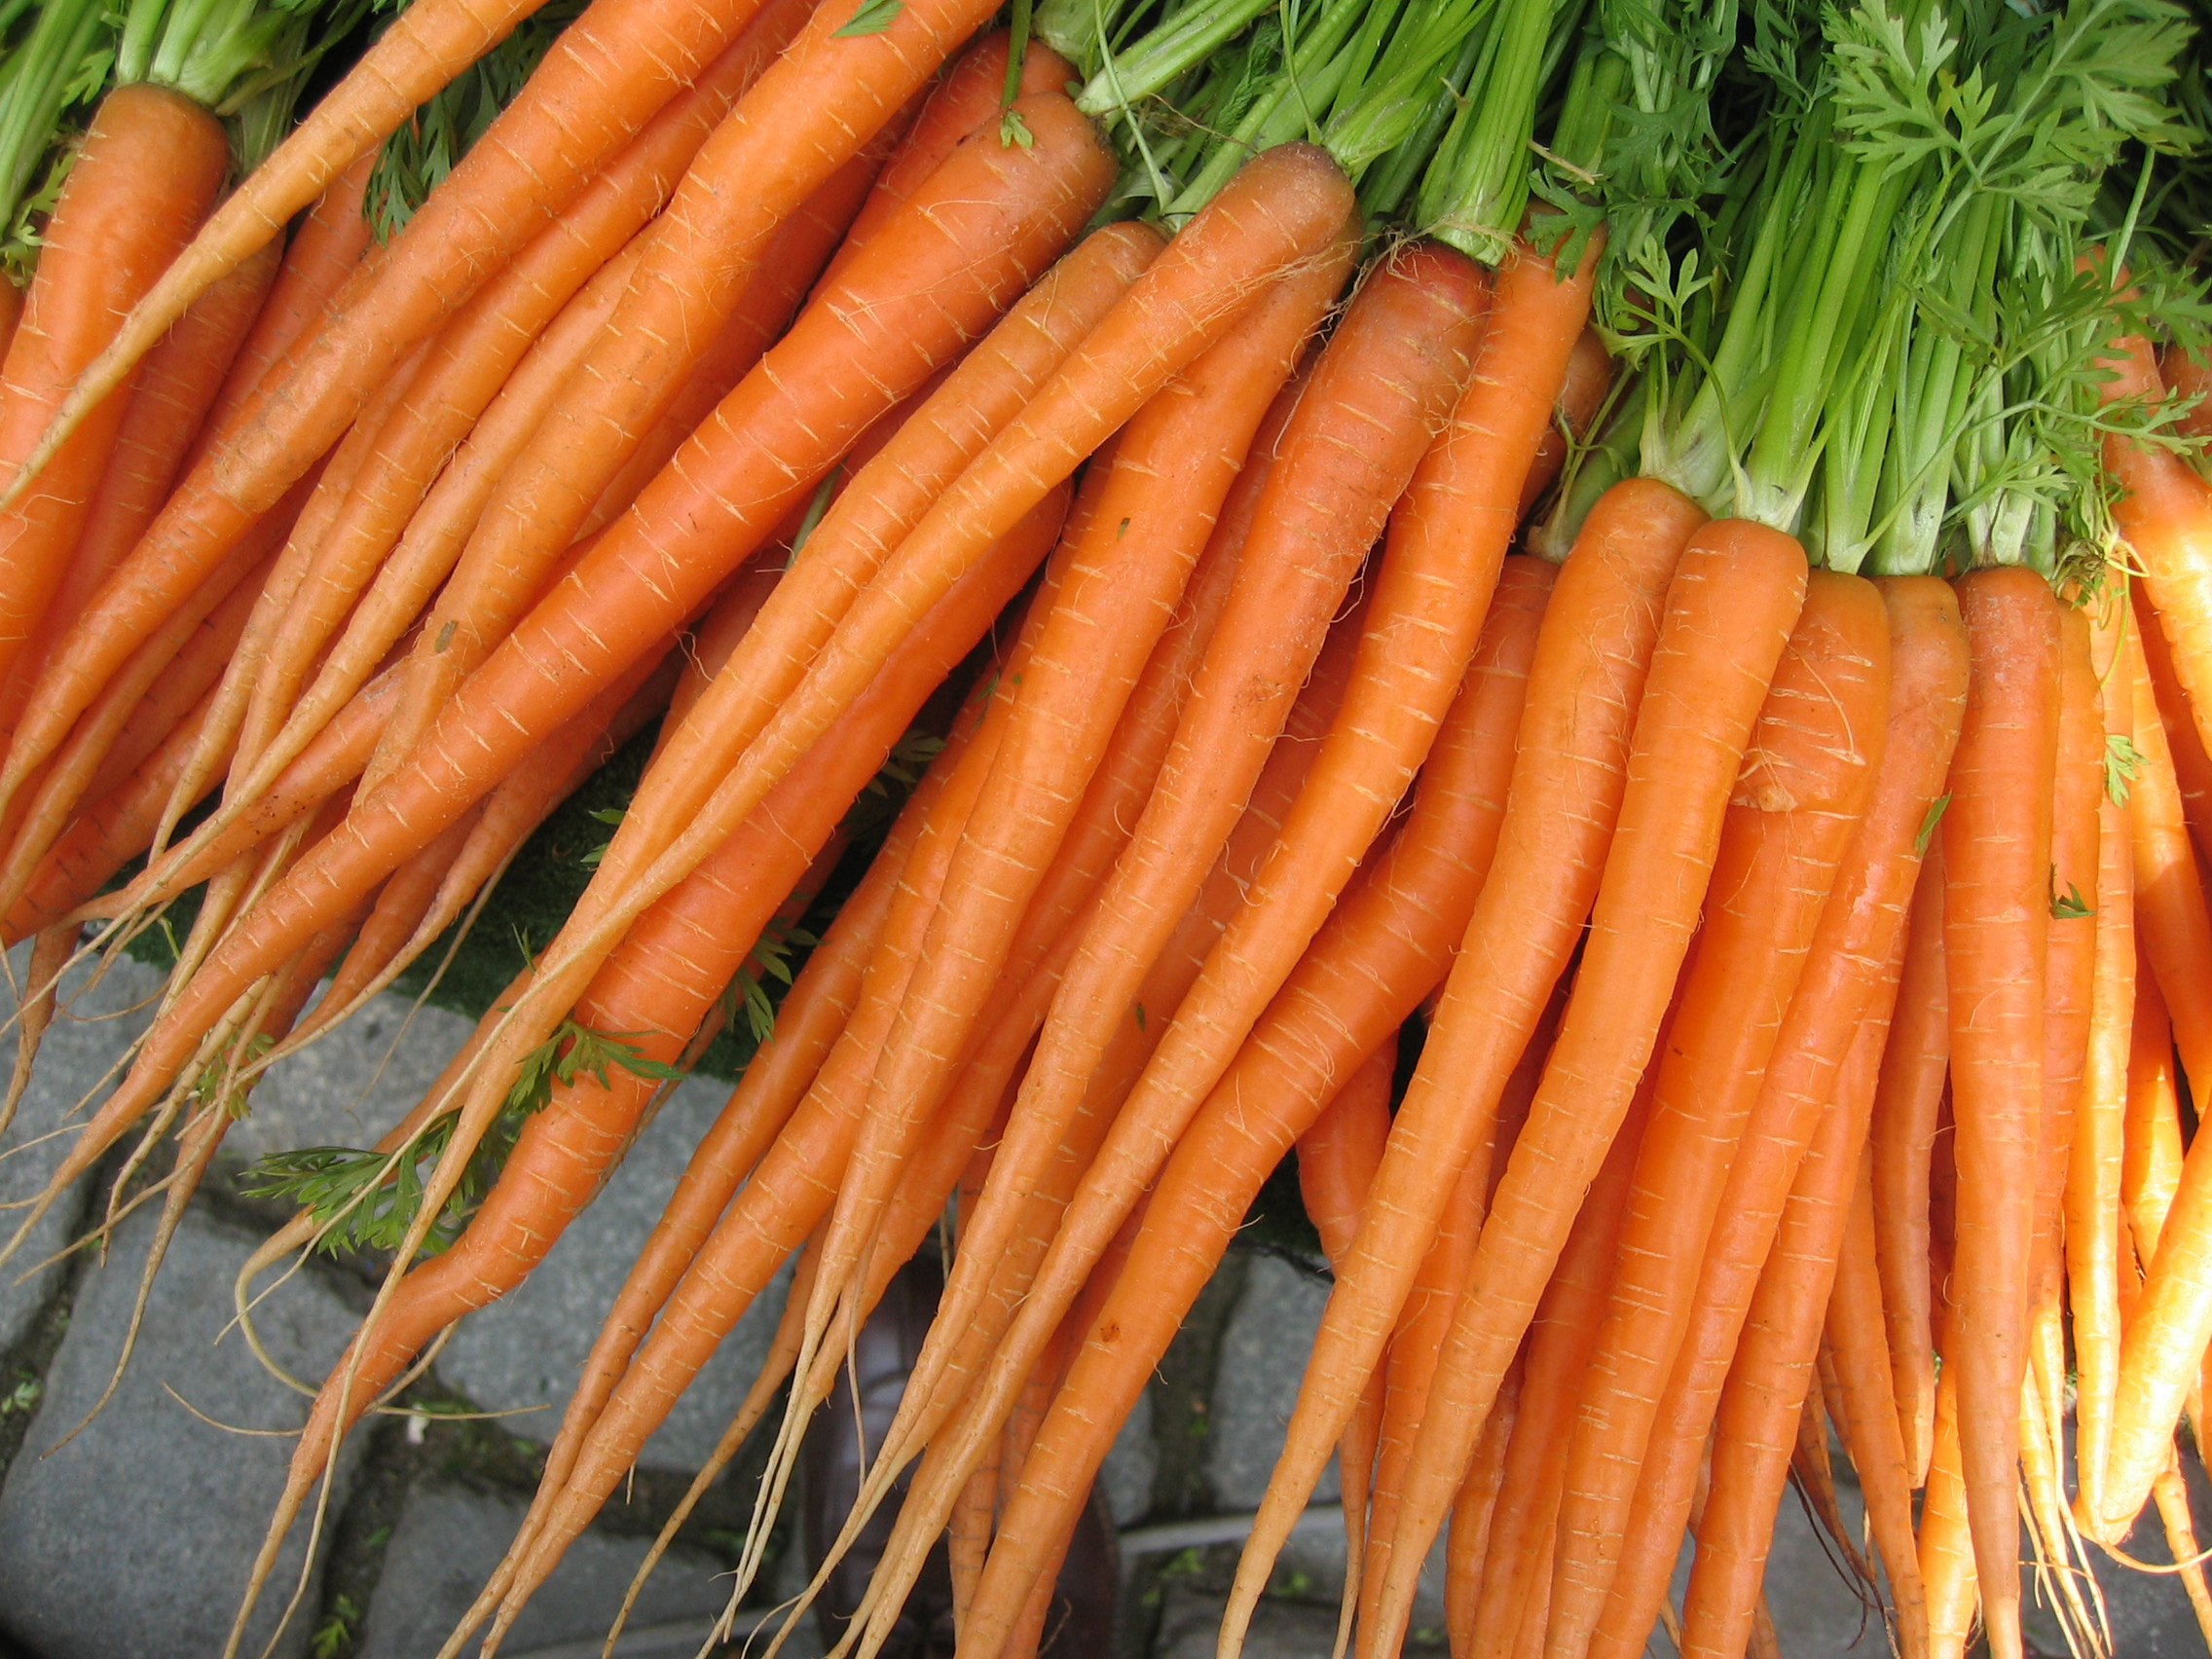 Political Carrots